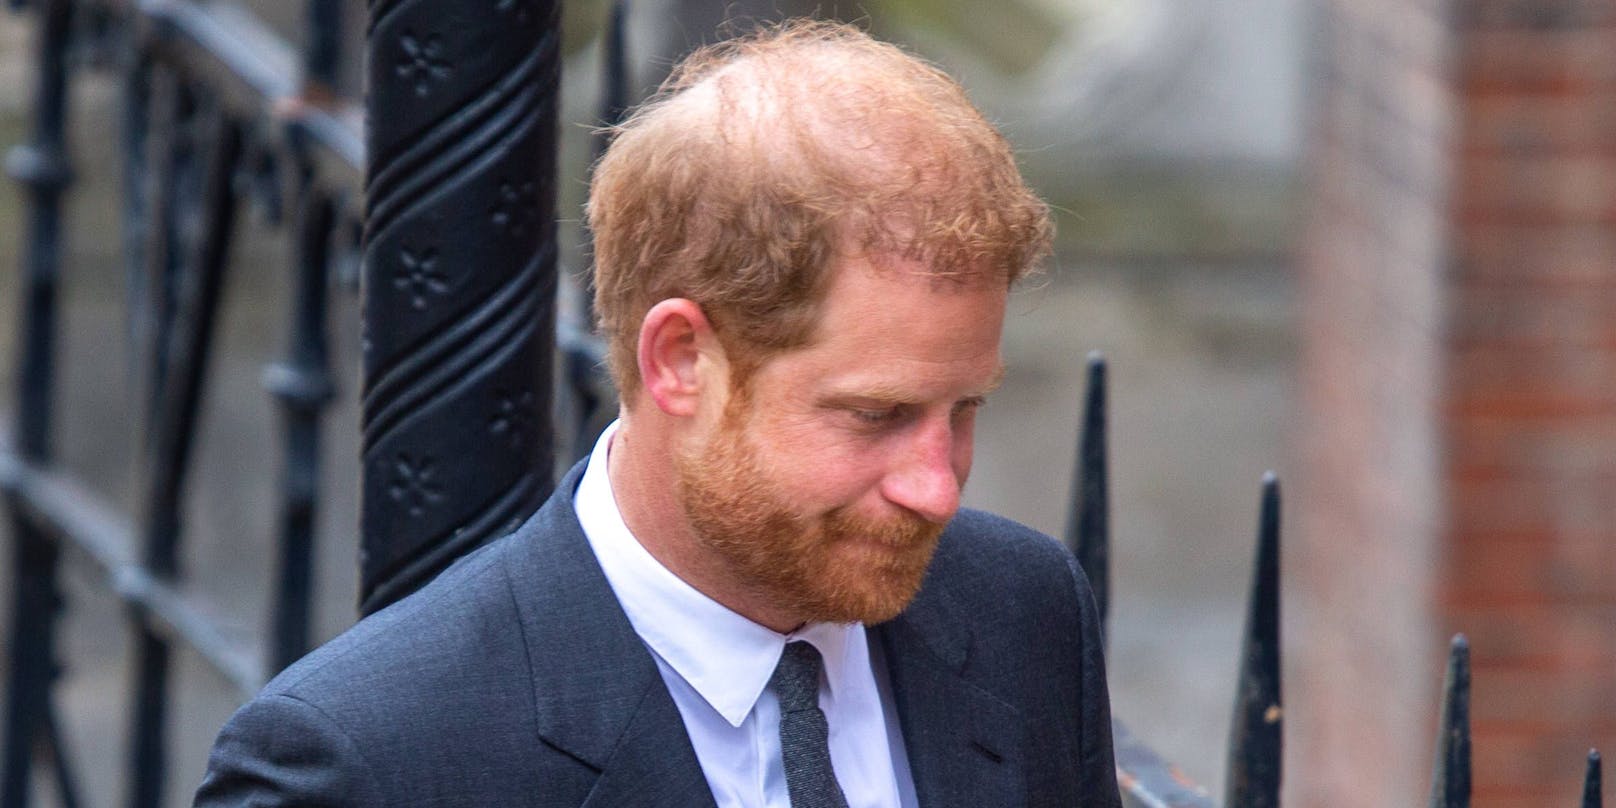 Prinz Harry fällt aktuell mit einem Bild auf, auf dem er mit einer ungewohnten Haarpracht zu sehen ist.